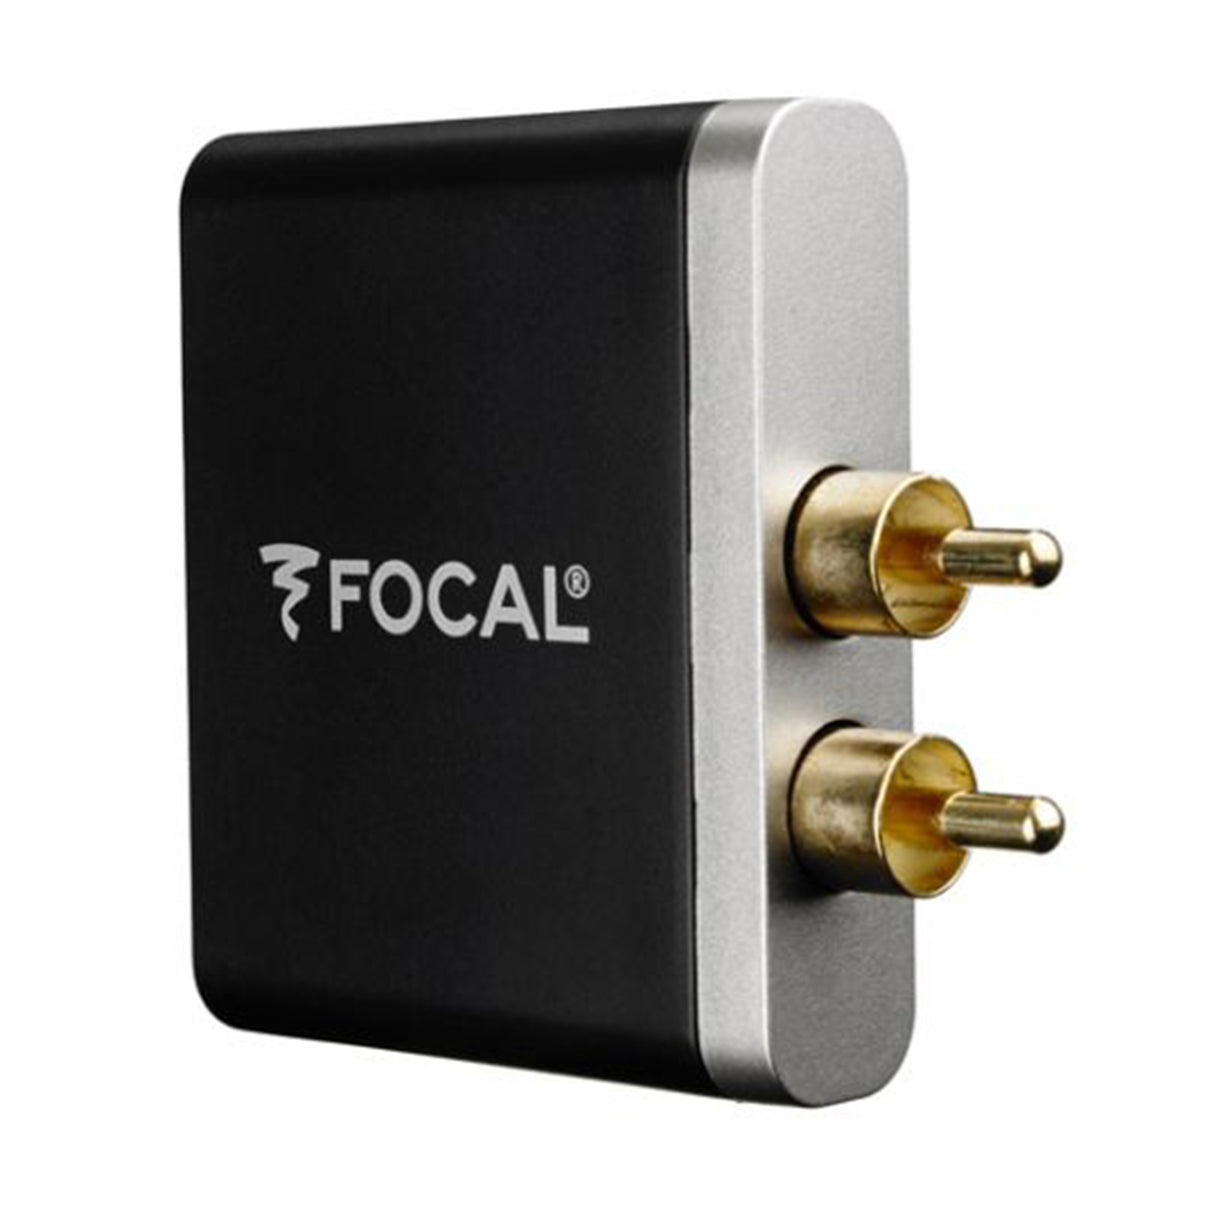 Focal aptX Wireless Universal Receiver